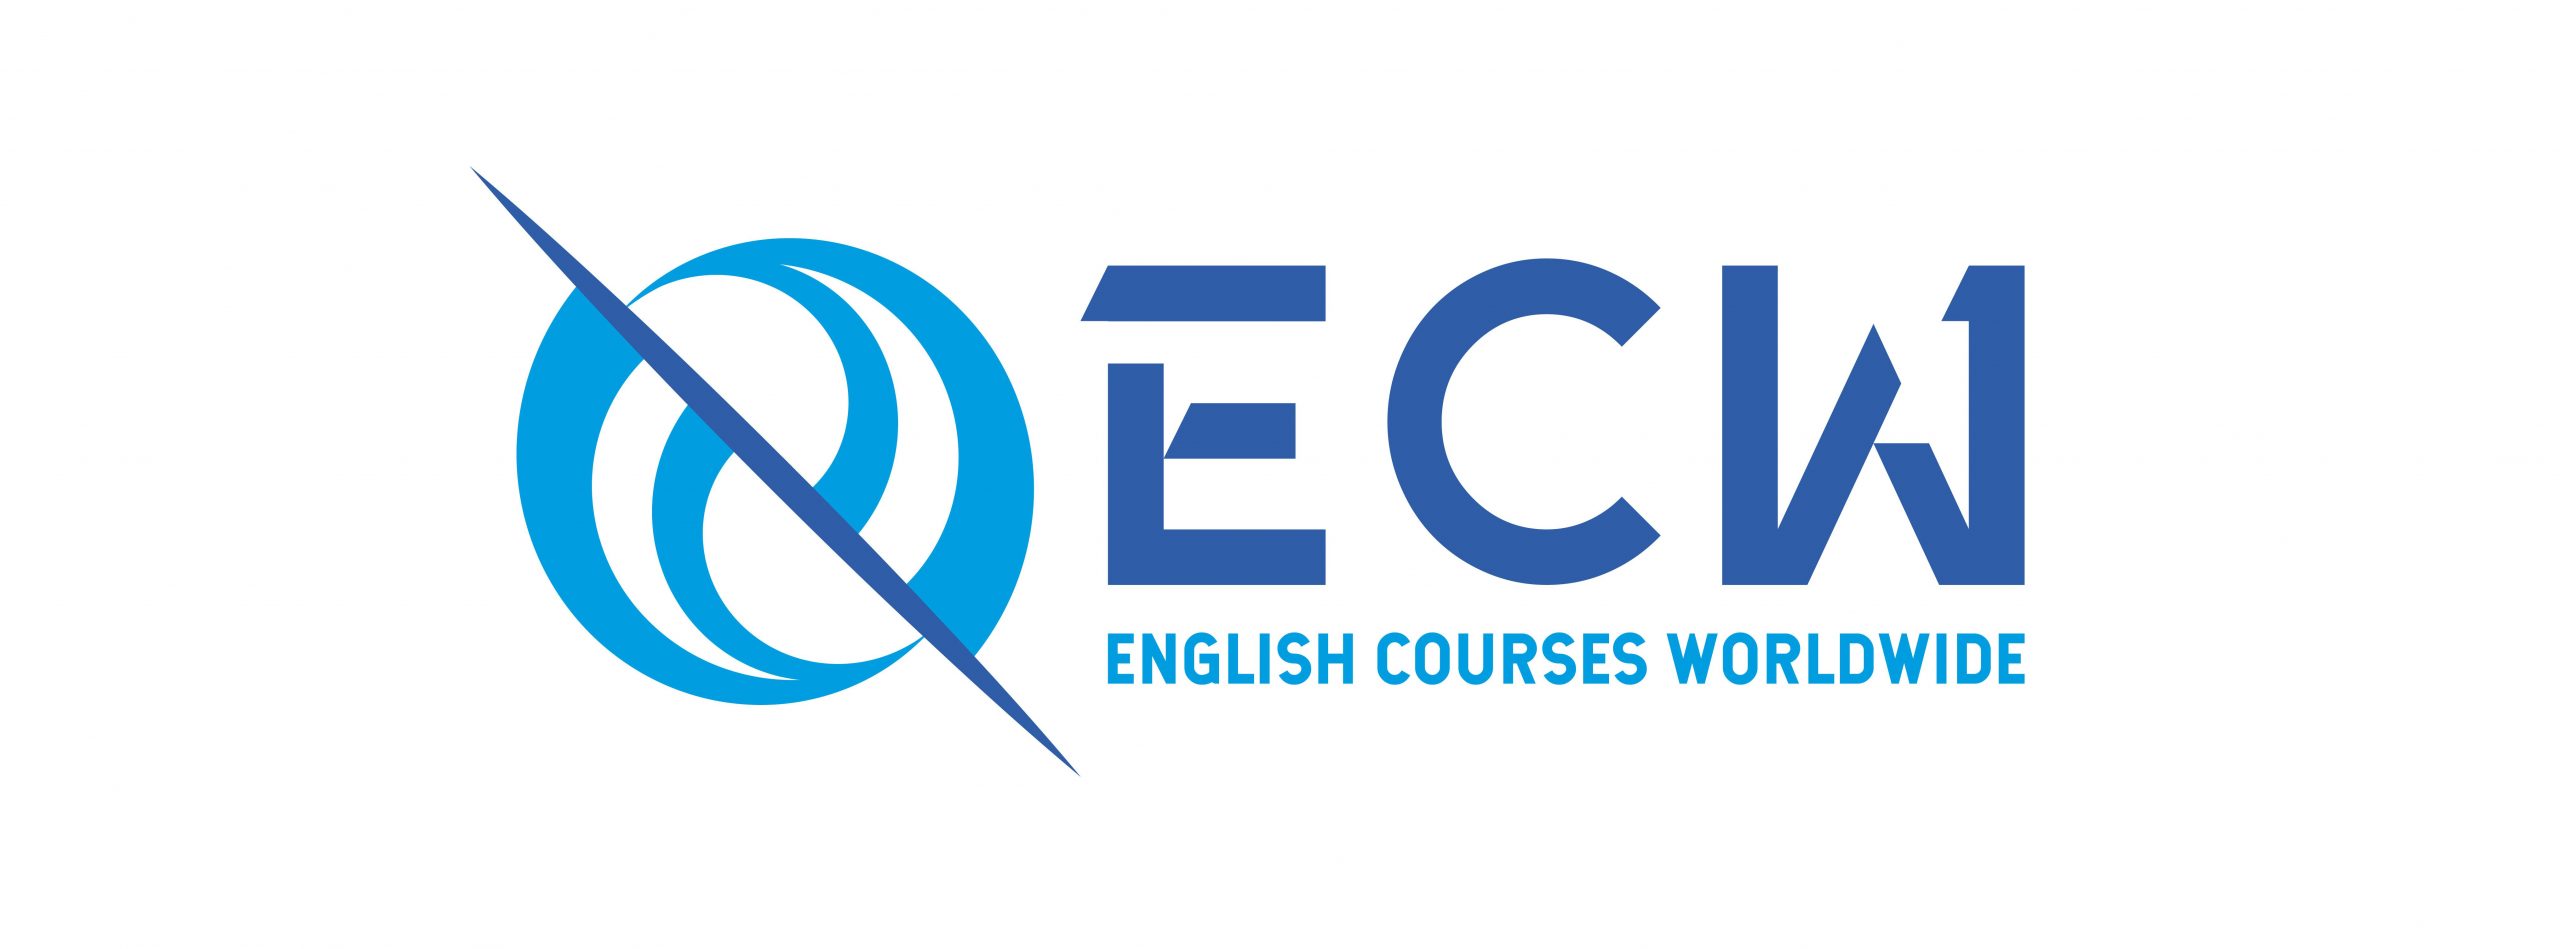 English courses worldwide